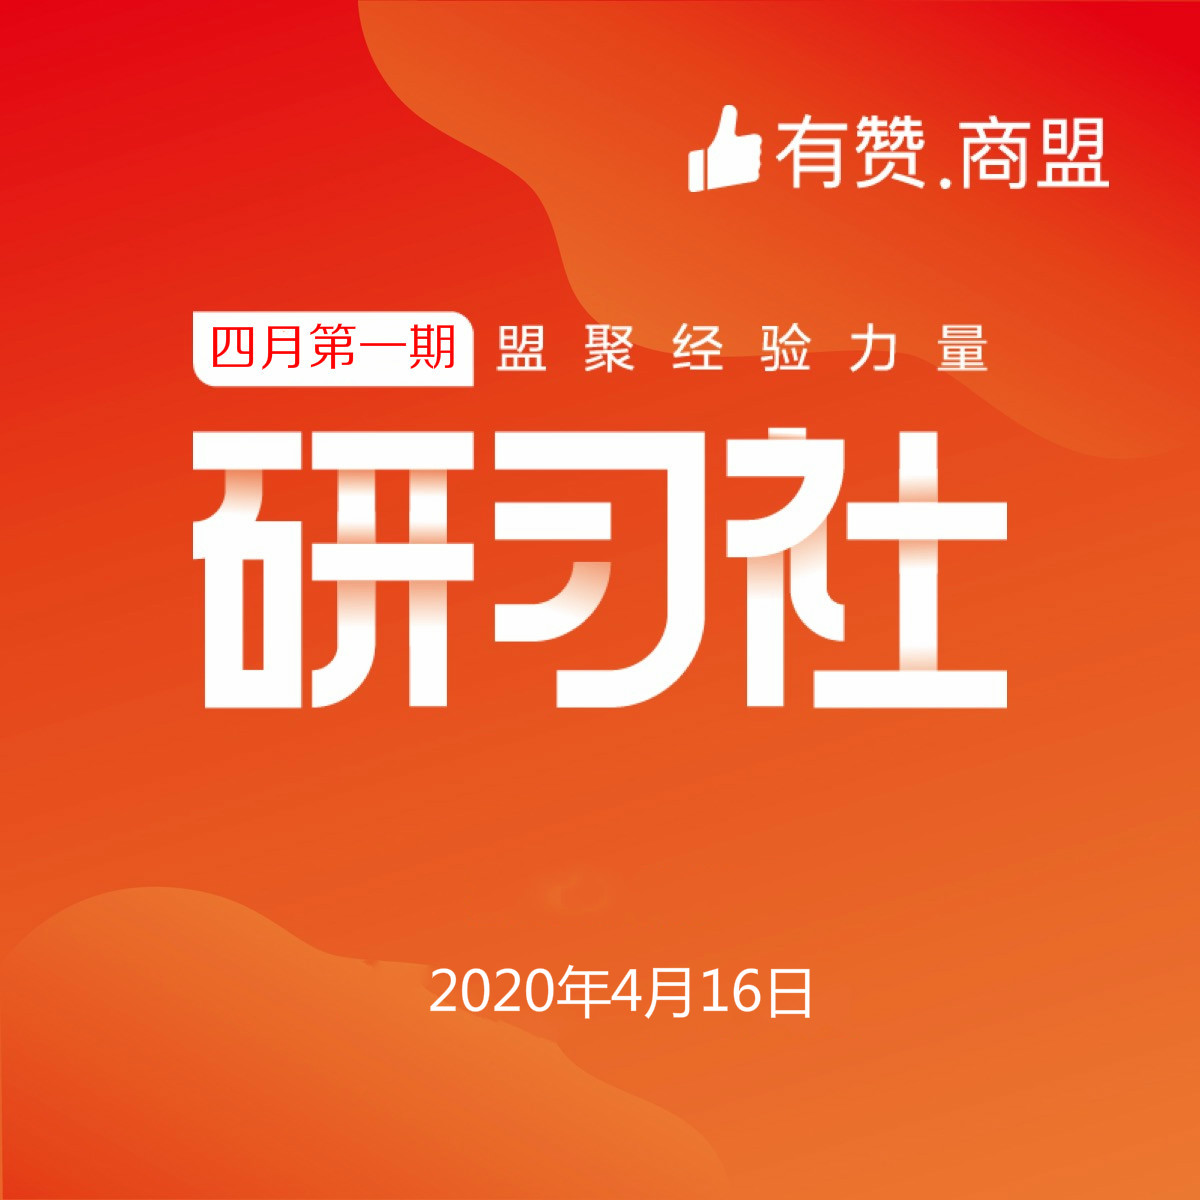 【有赞上海商盟研习社】 第五十七期 线上开店辅导班【2020.04.16】